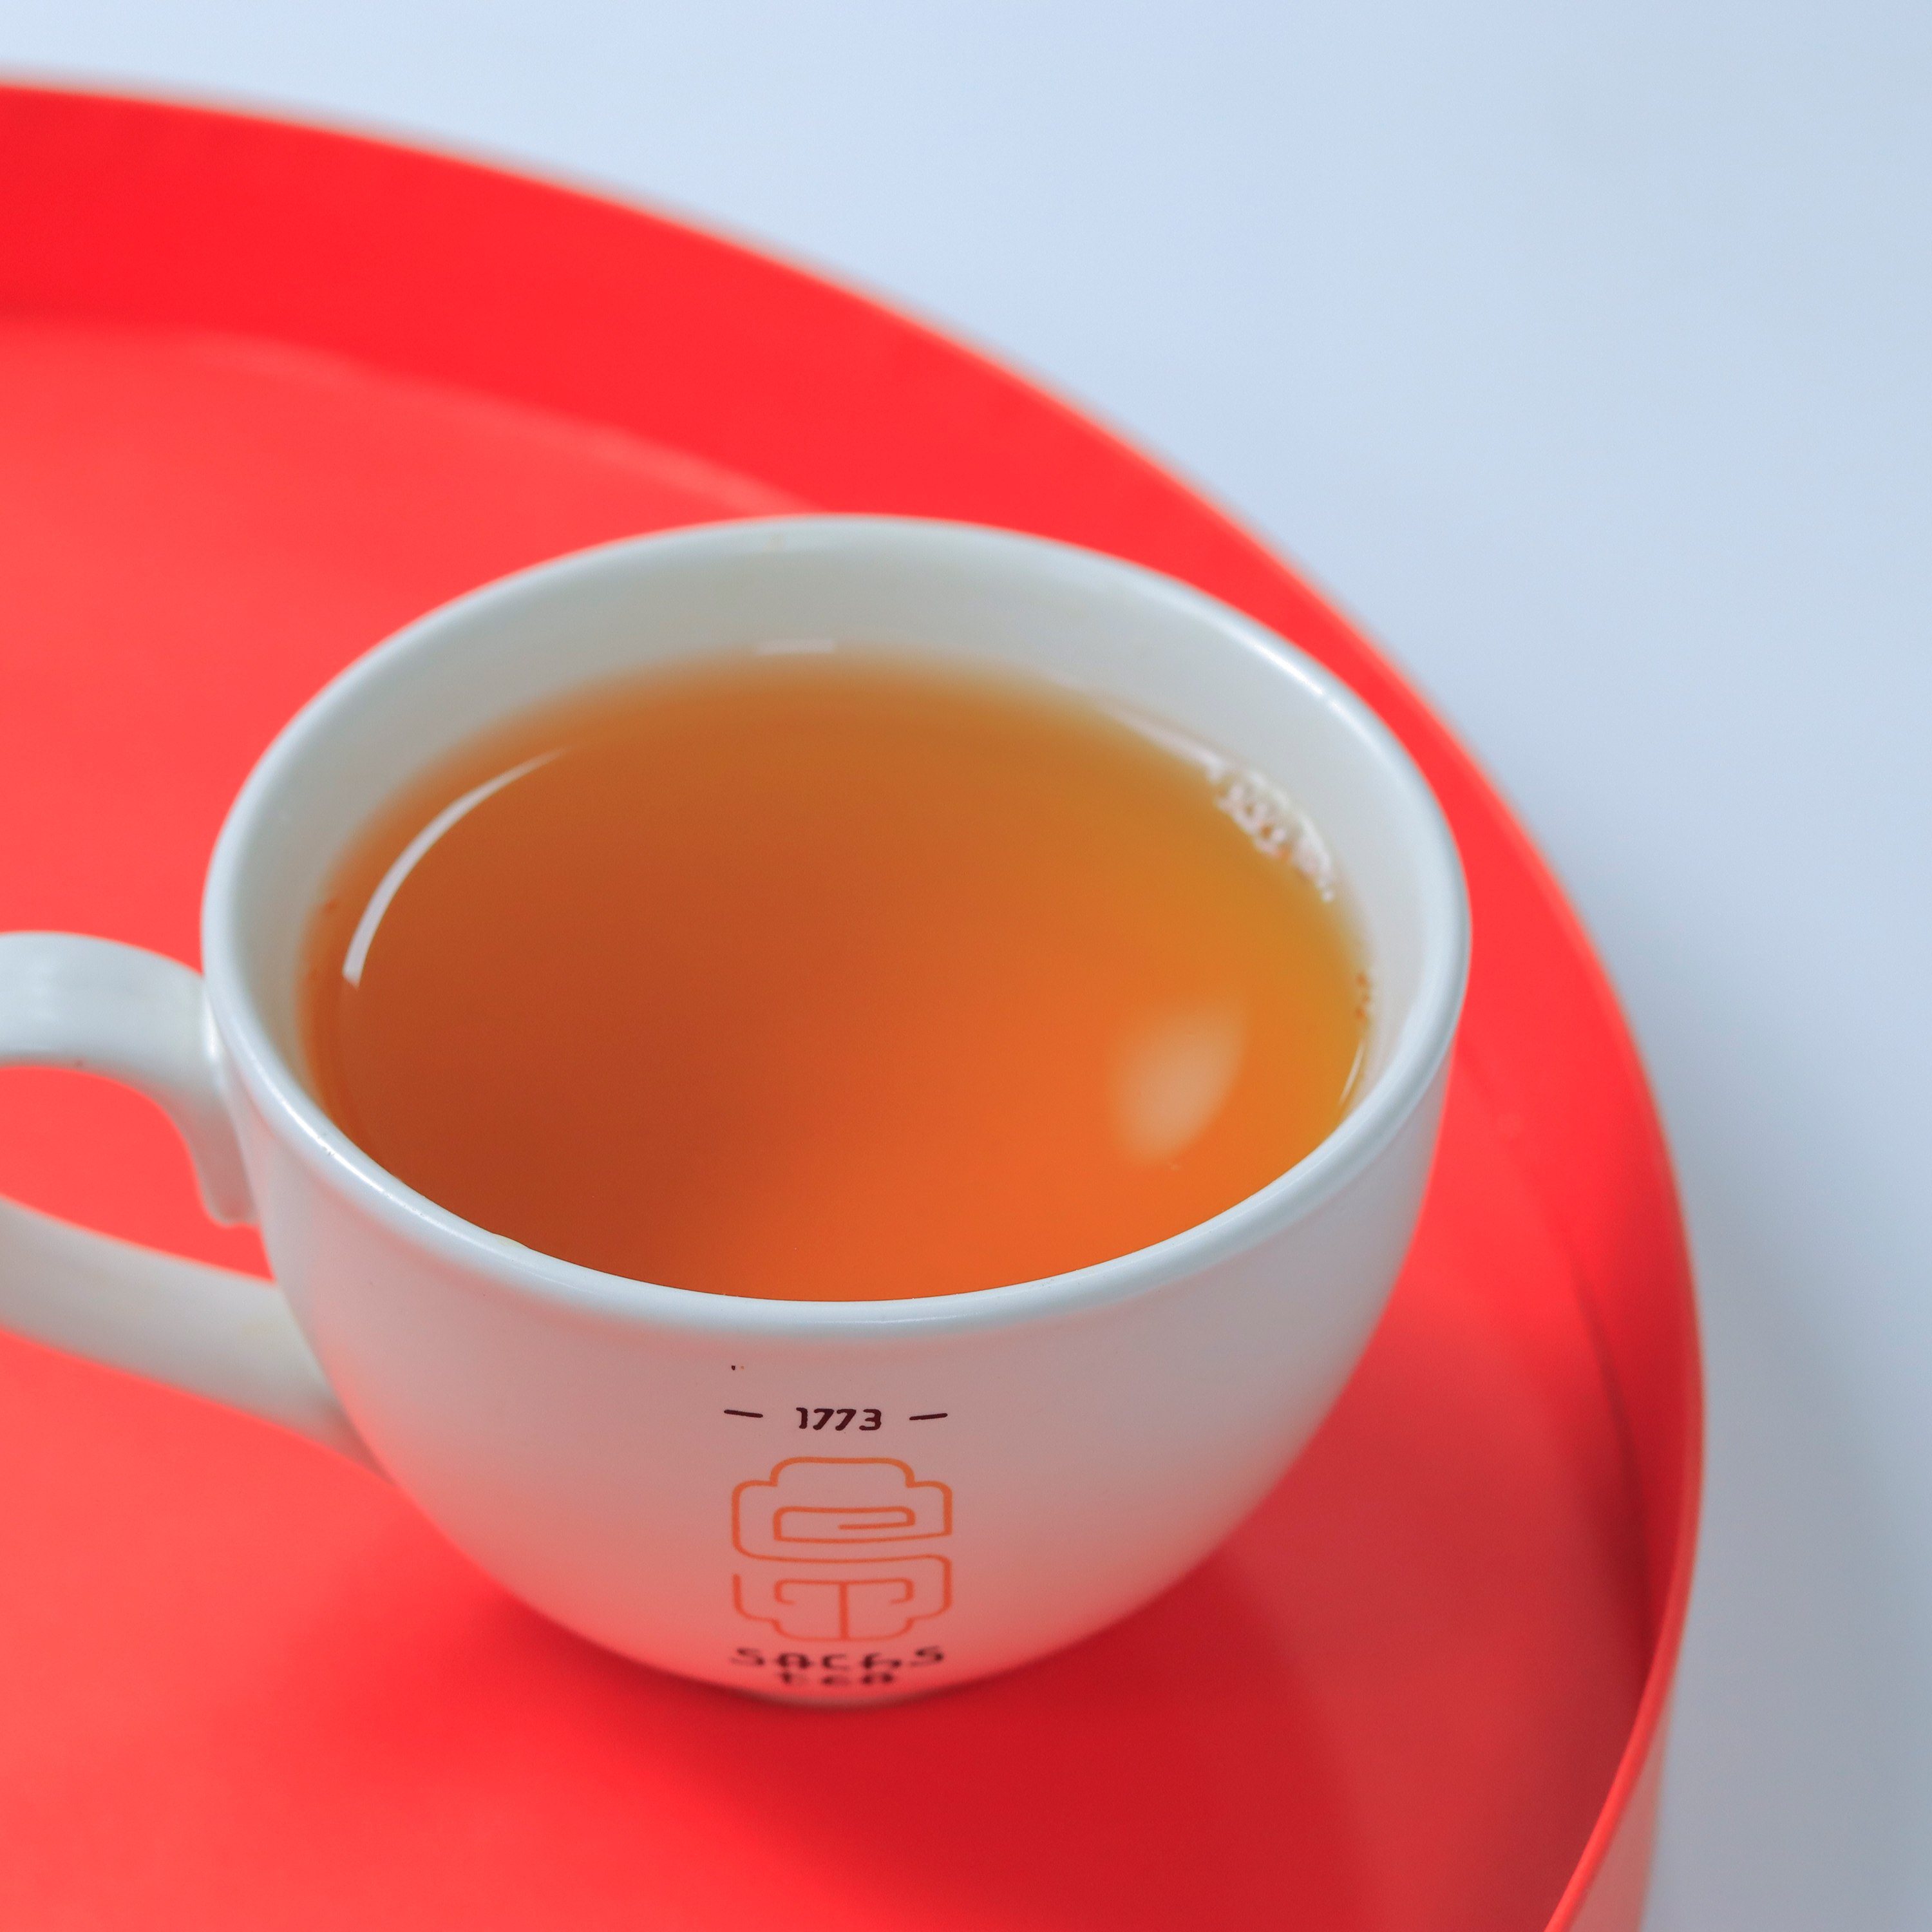 Hồng trà hữu cơ ( 1 tôm 2 lá ) SACHS TEA 1773 vụ trà xuân hái sớm đầu năm 100g/túi